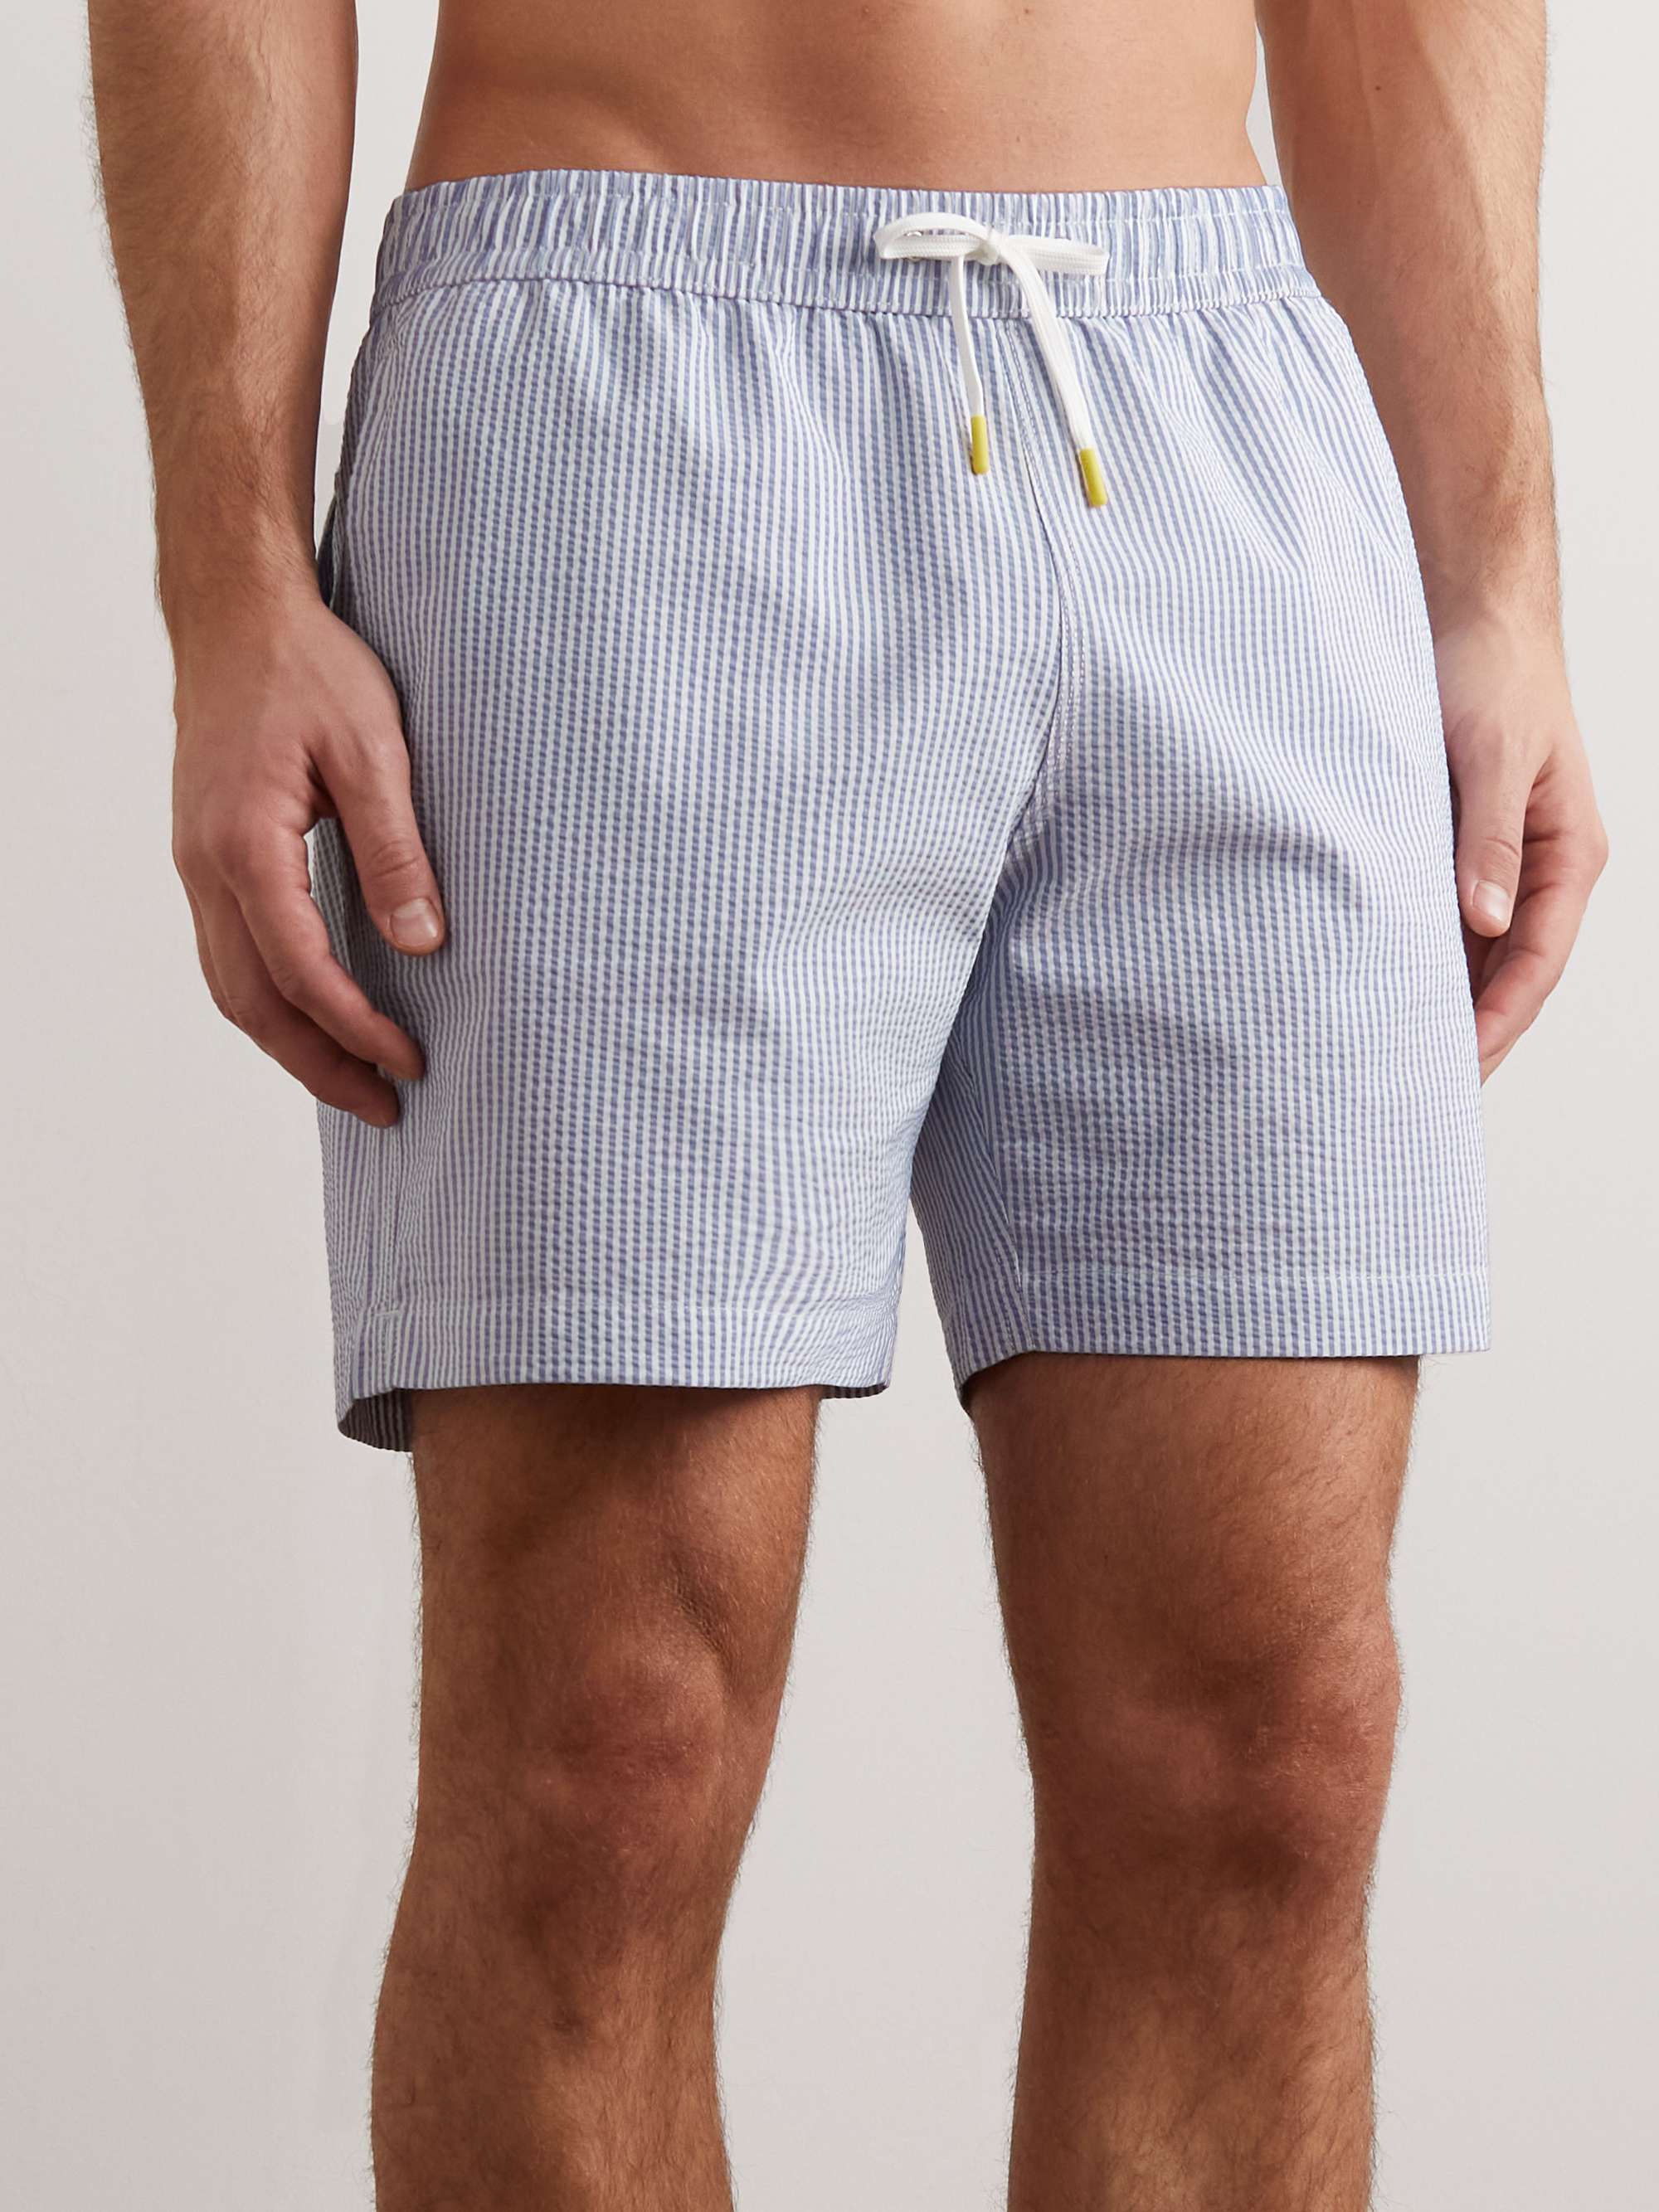 HARTFORD Straight-Leg Mid-Length Striped Seersucker Swim Shorts for Men |  MR PORTER